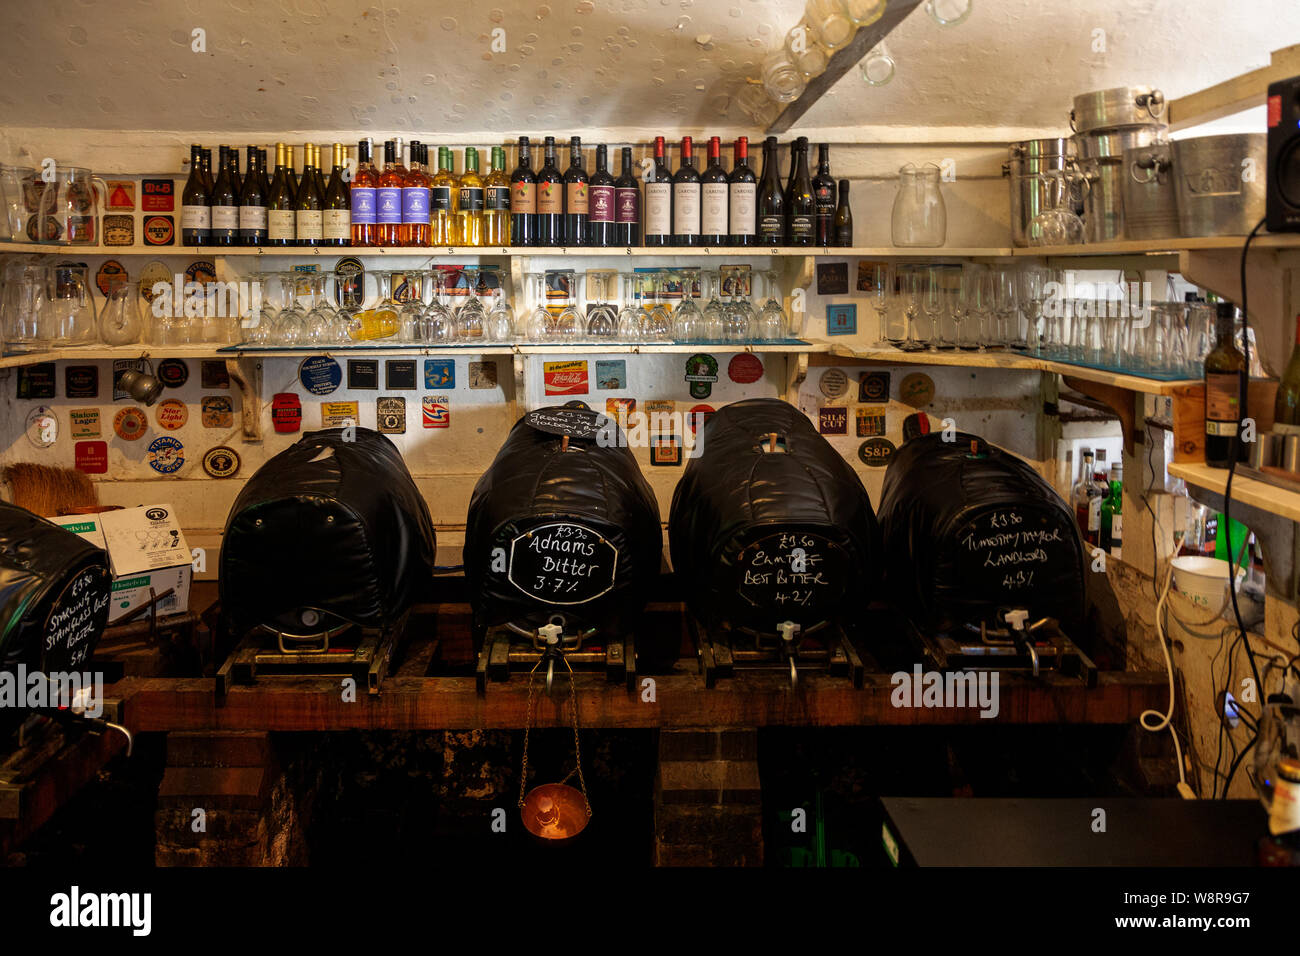 Barriles de cerveza real ale en el grifo de la habitación King's Head Pub conocido como la Casa Baja, Laxfield, Suffolk, Inglaterra, Reino Unido. Foto de stock